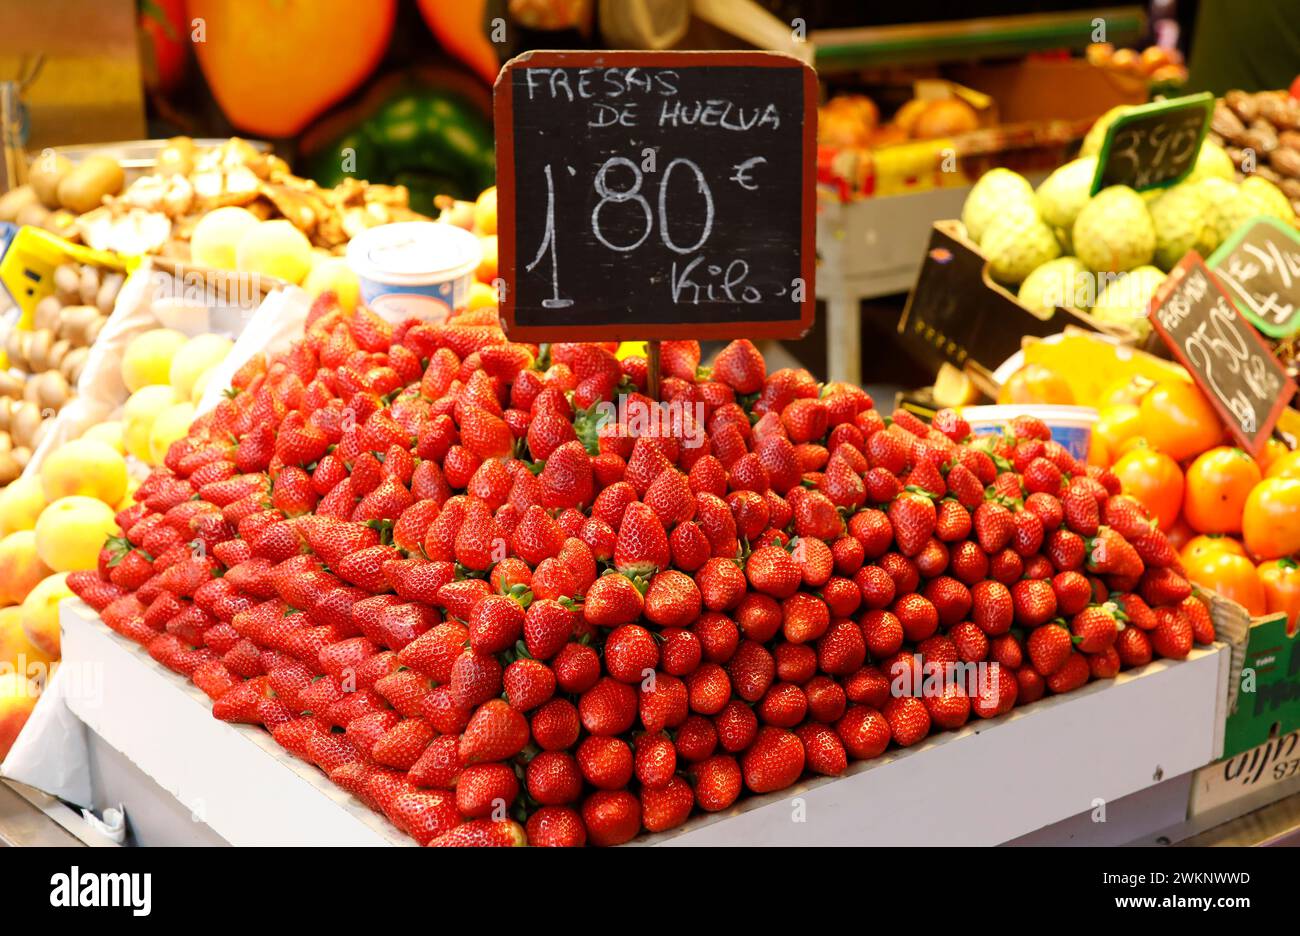 Fraises espagnoles fraîches au marché des fruits et légumes de Malaga, 12/02/2019 Banque D'Images